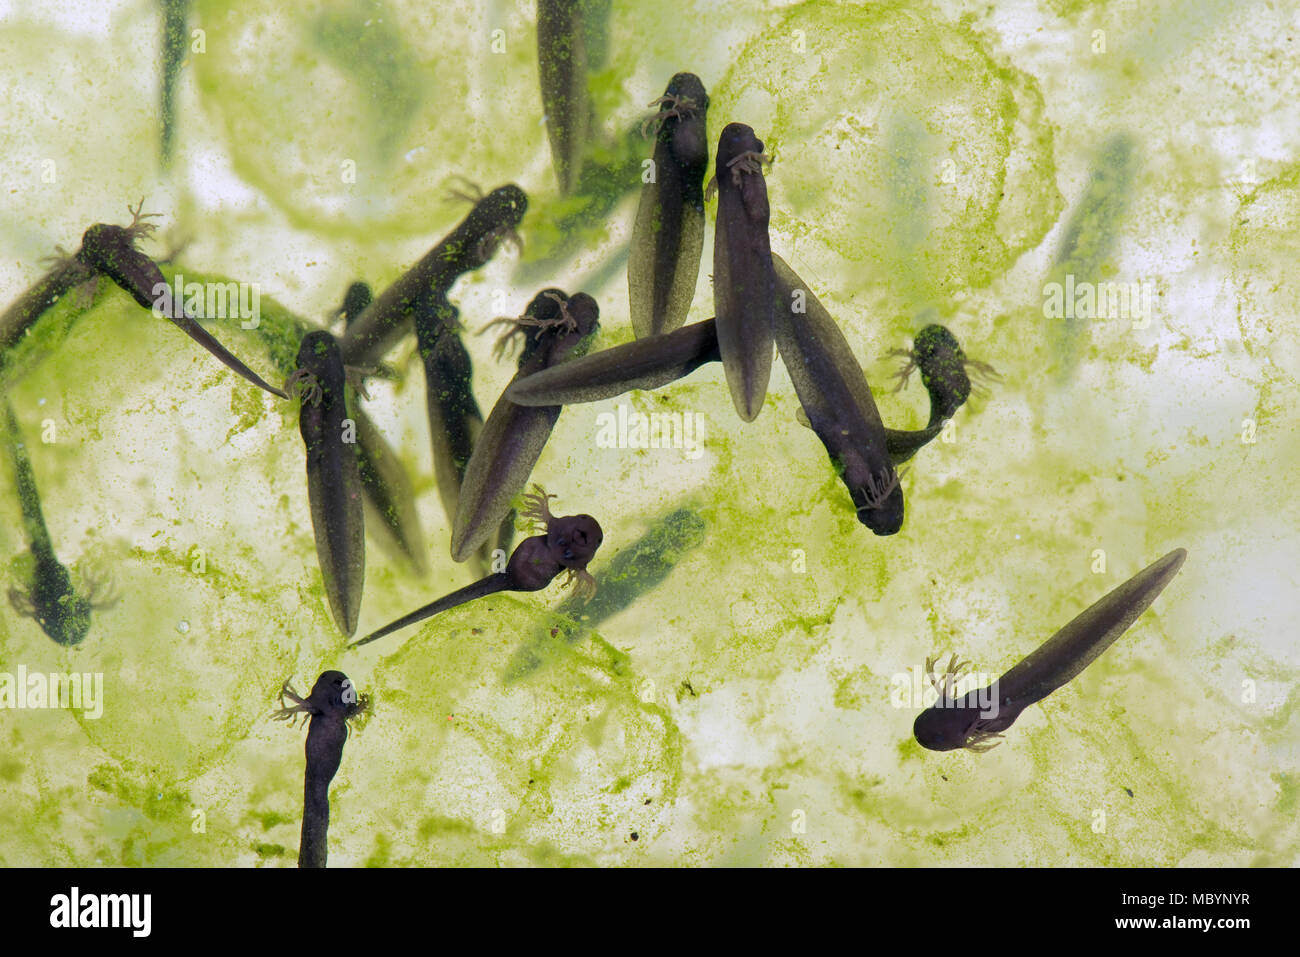 Rana común europeo, Rana temporaria, con frogspawn eclosionó y incubar renacuajos, Abril Foto de stock